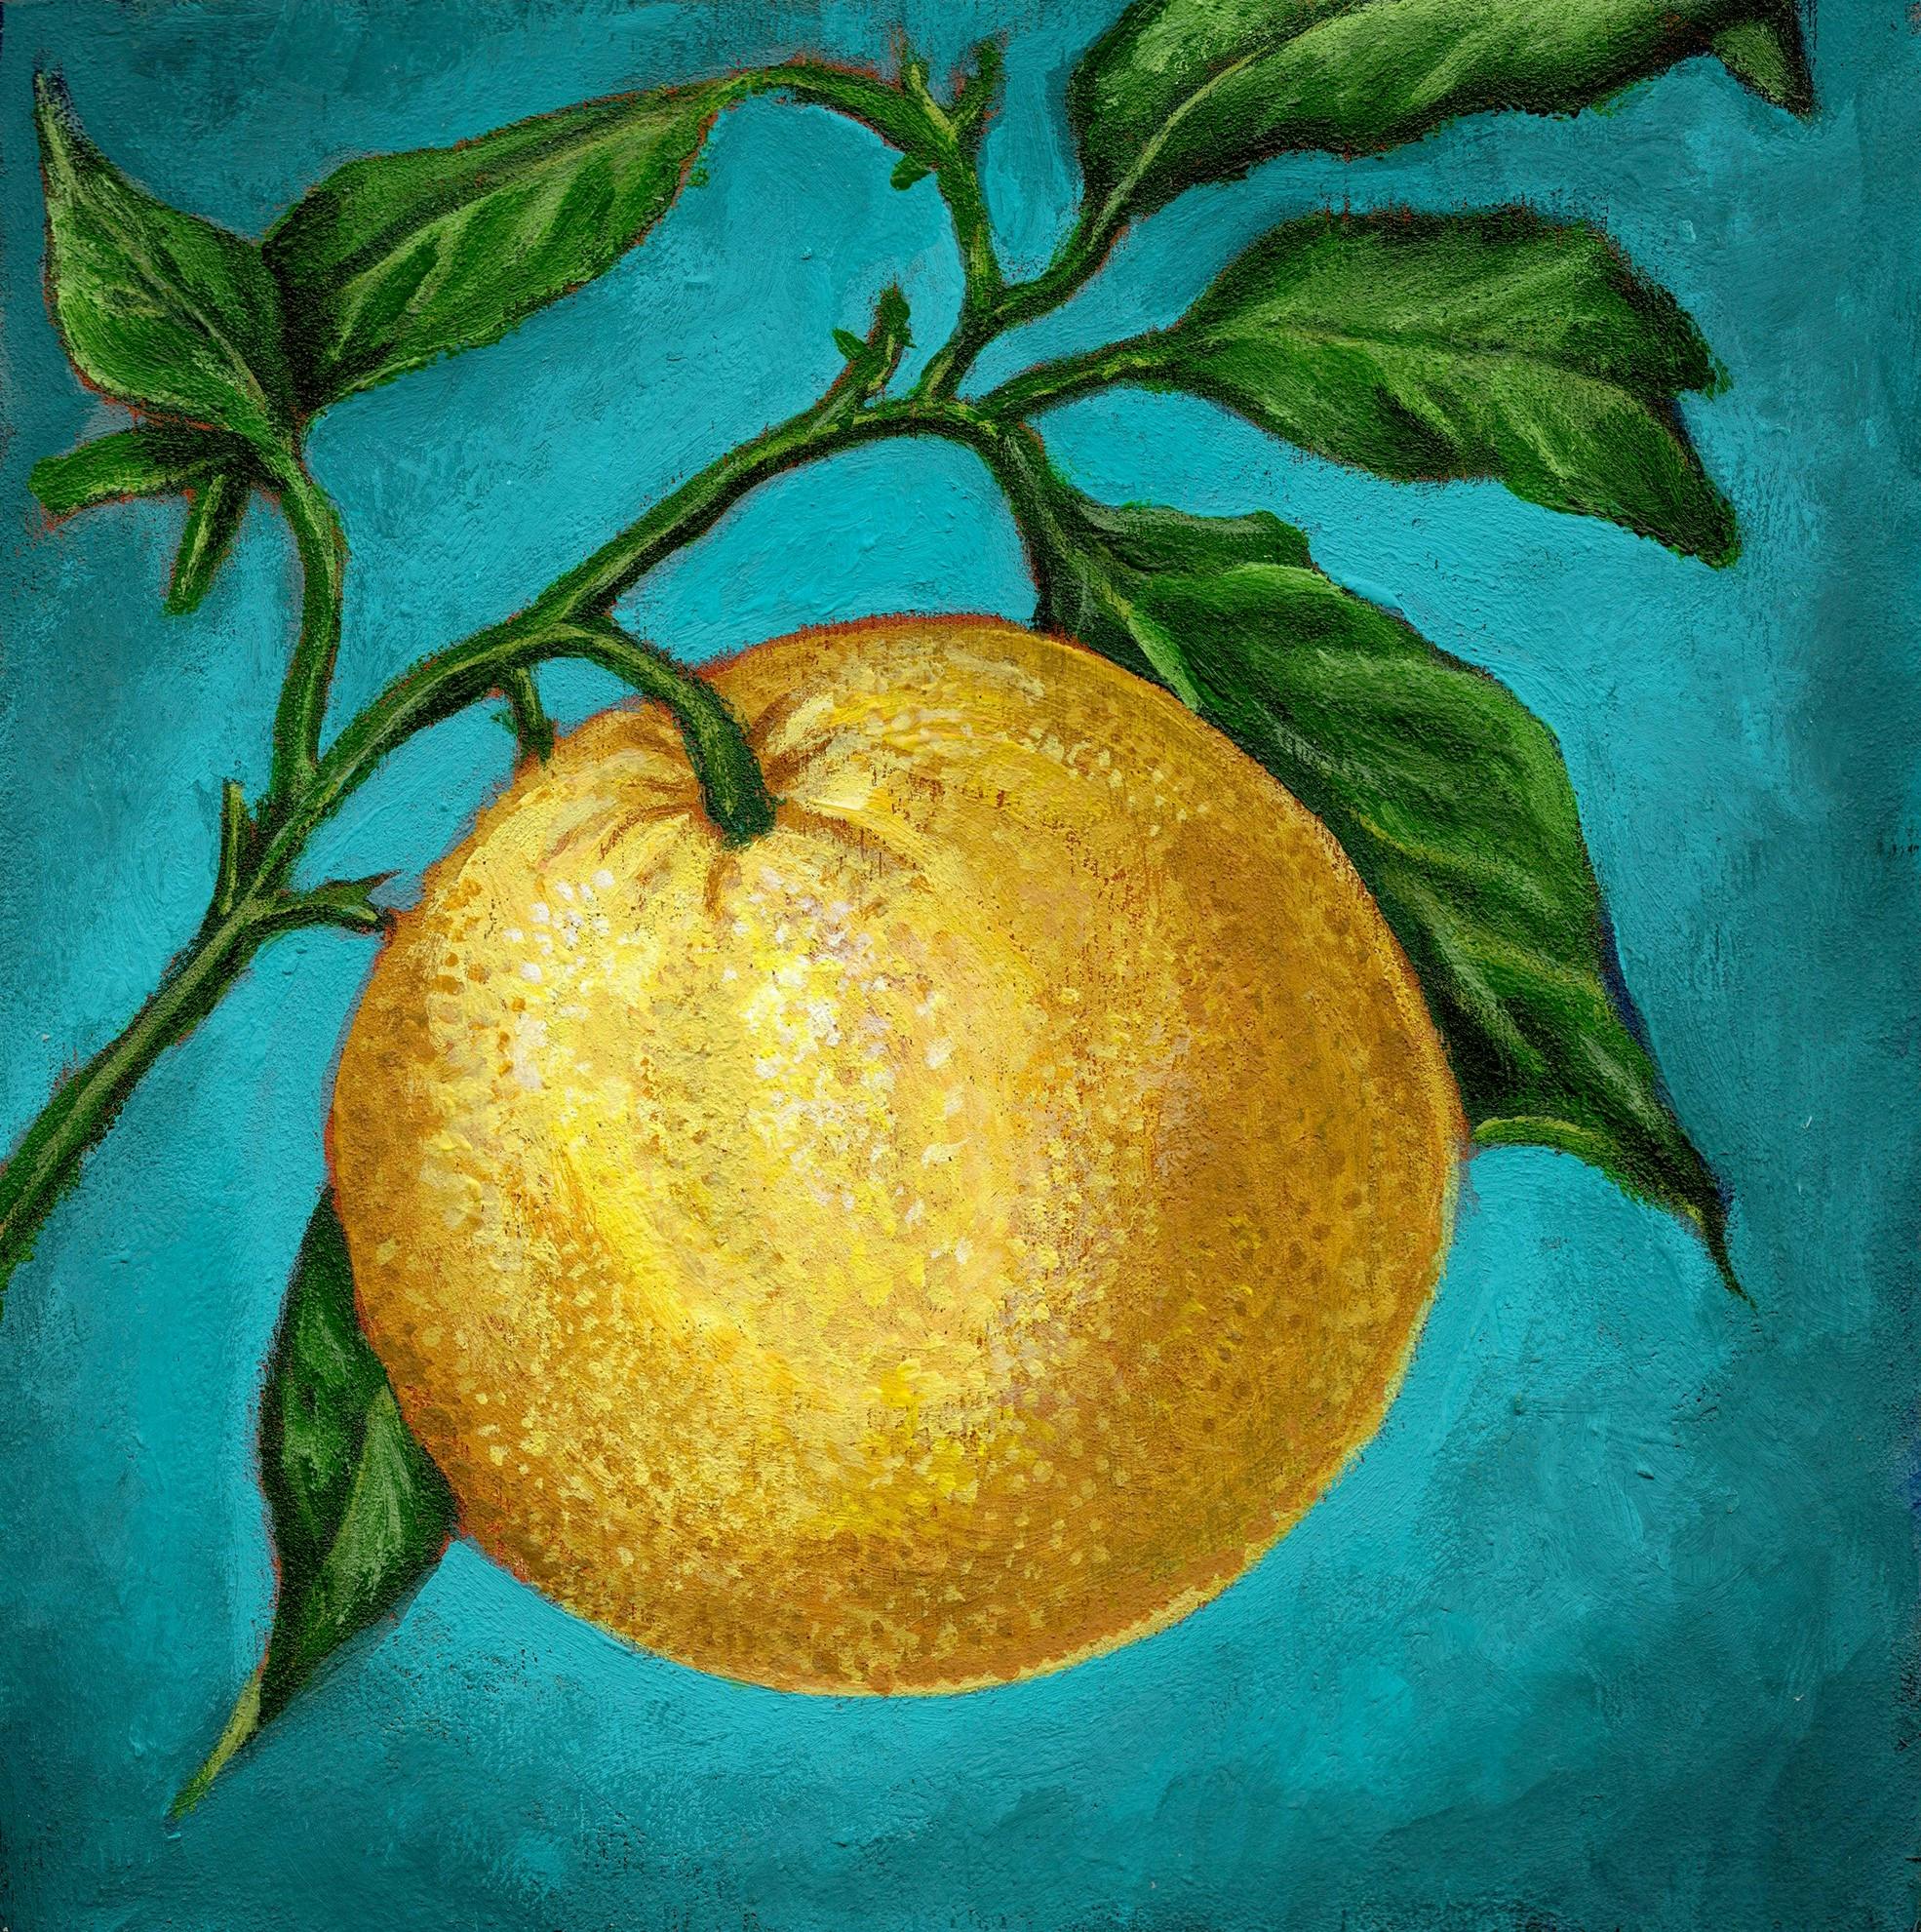 Illustration of lemon